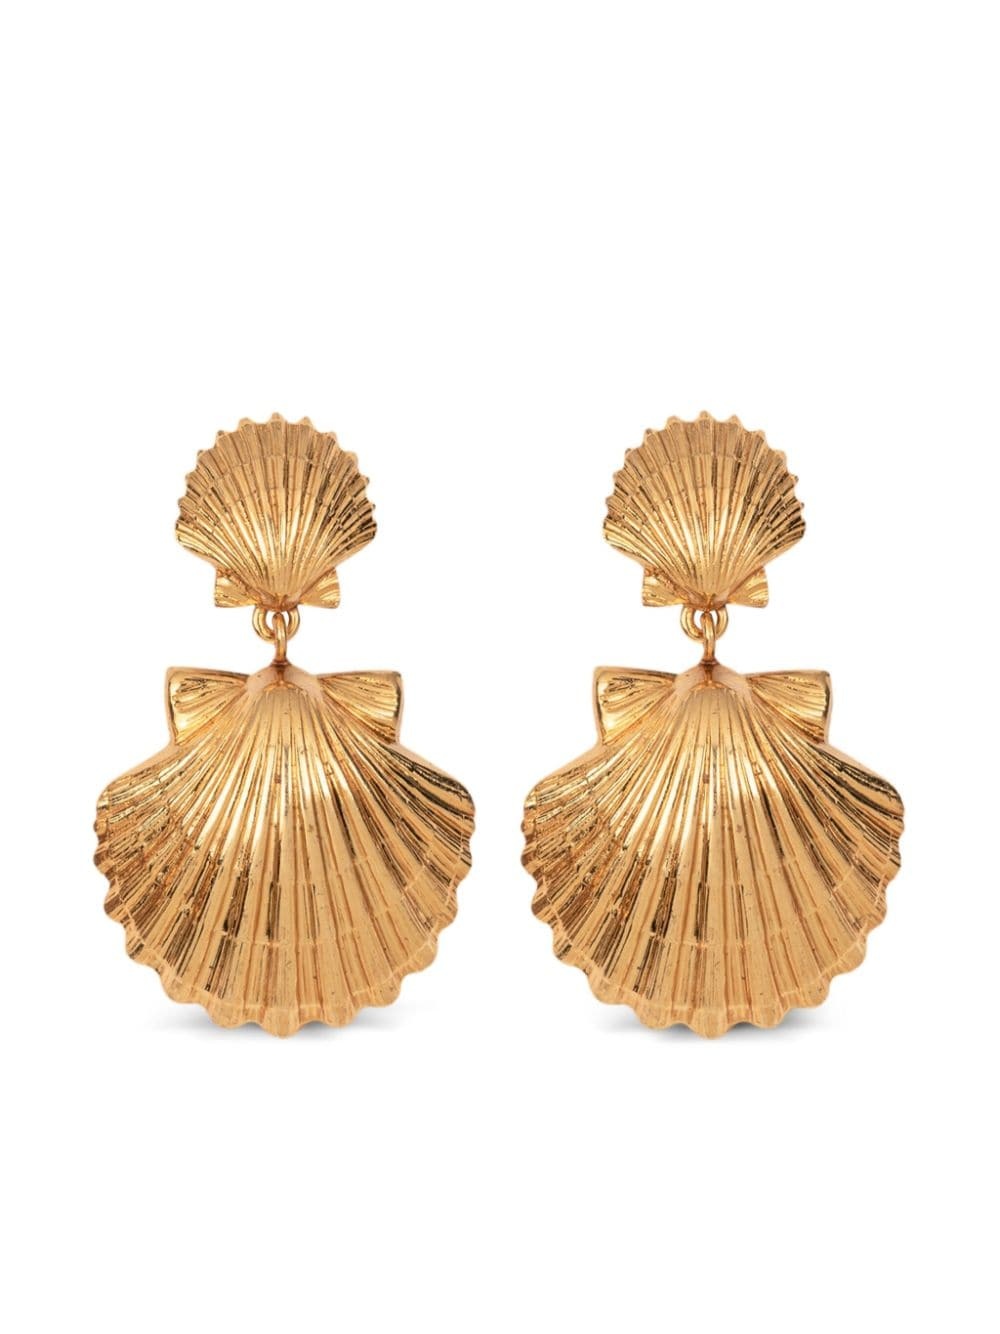 Caspian shell earrings - 1